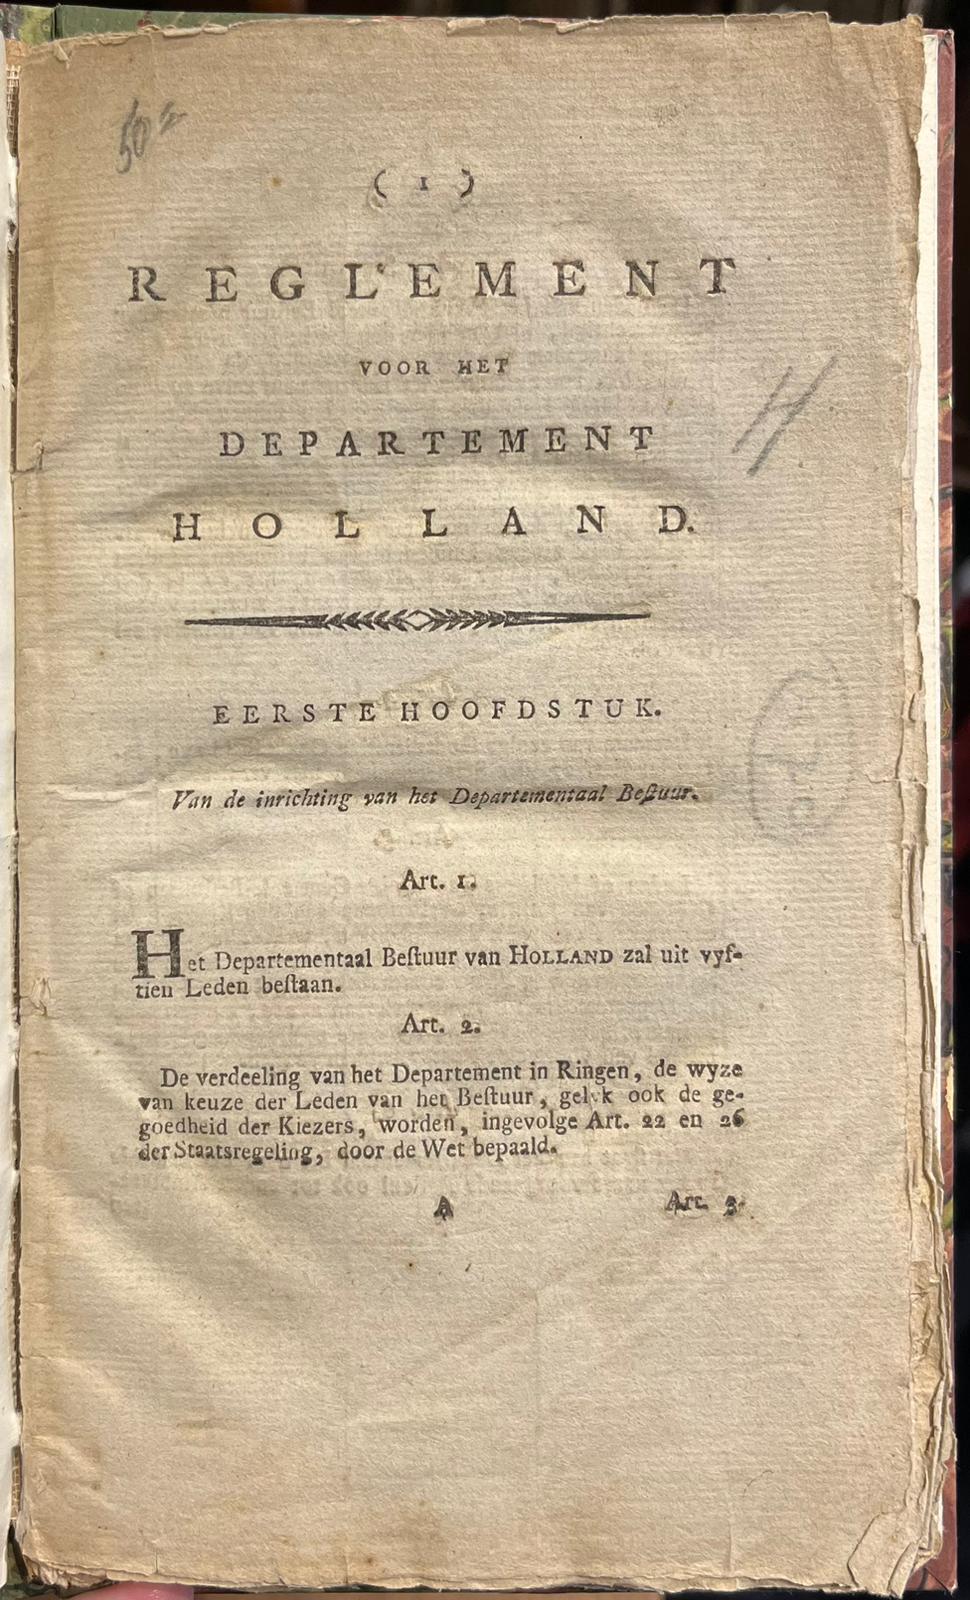 [Printed publication, [s.d.], Batavian Republic] Reglement voor het Departement Holland, [s.l.], [s.d.], 61 pp.